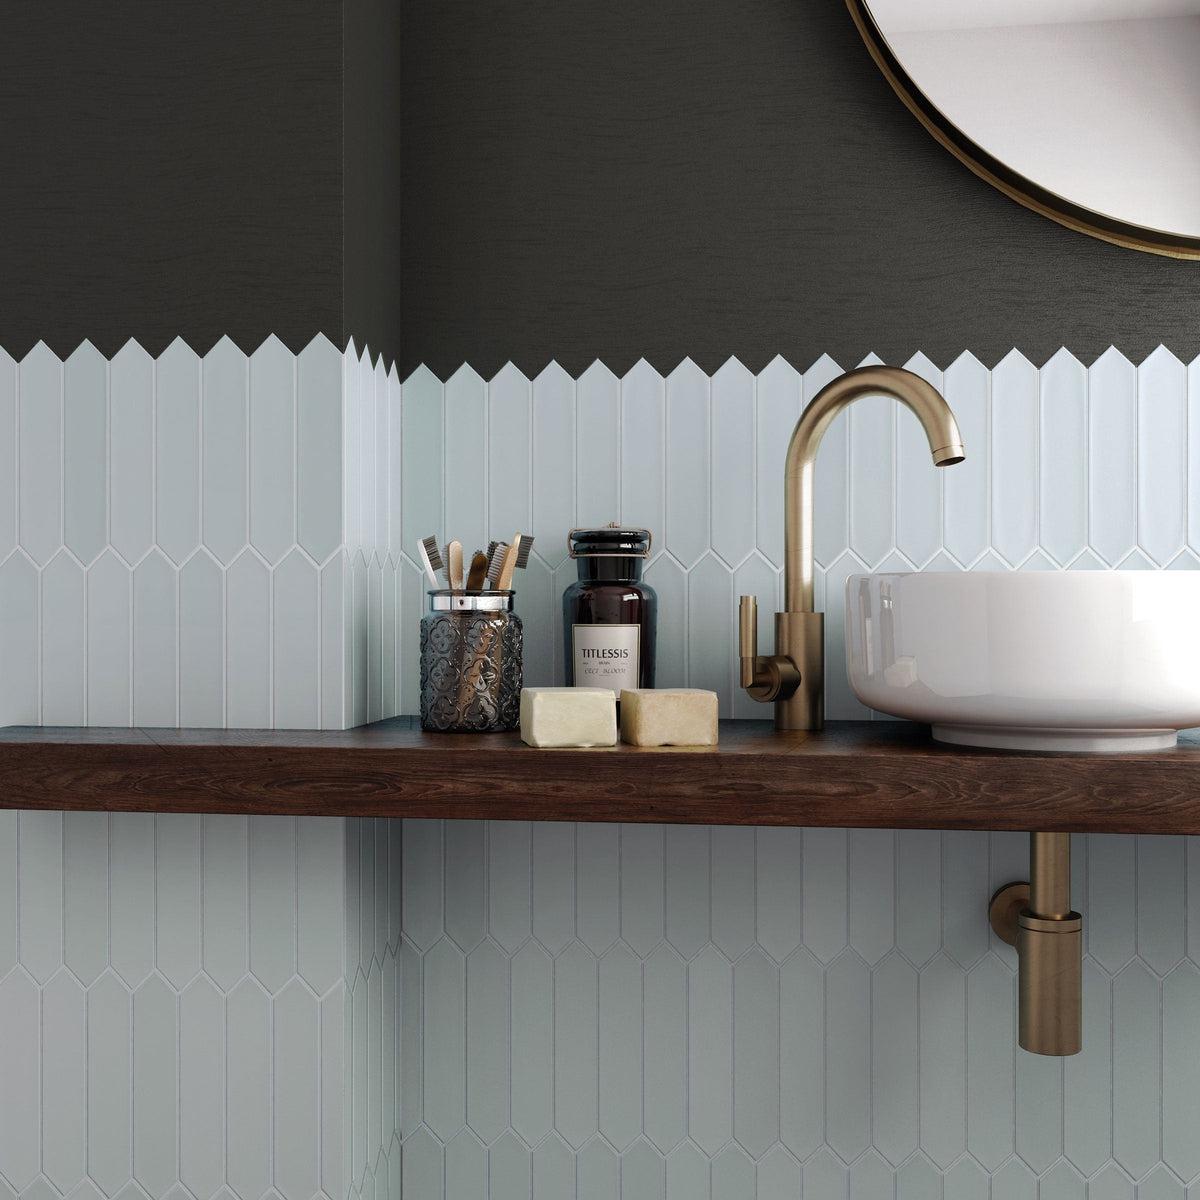 Blue ceramic picket tile bathroom sink backsplash